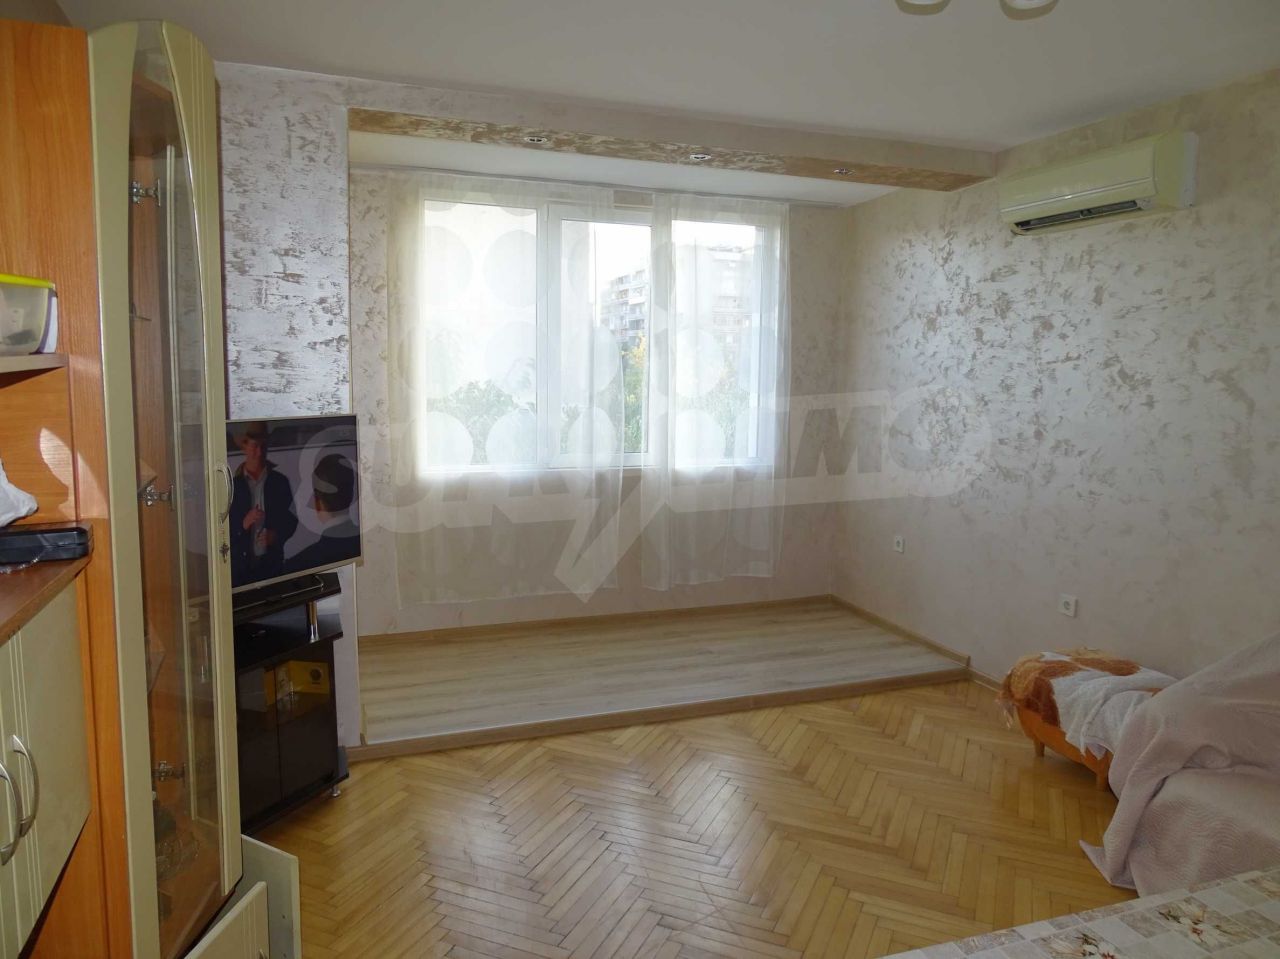 Apartment in Plovdiv, Bulgaria, 74 sq.m - picture 1